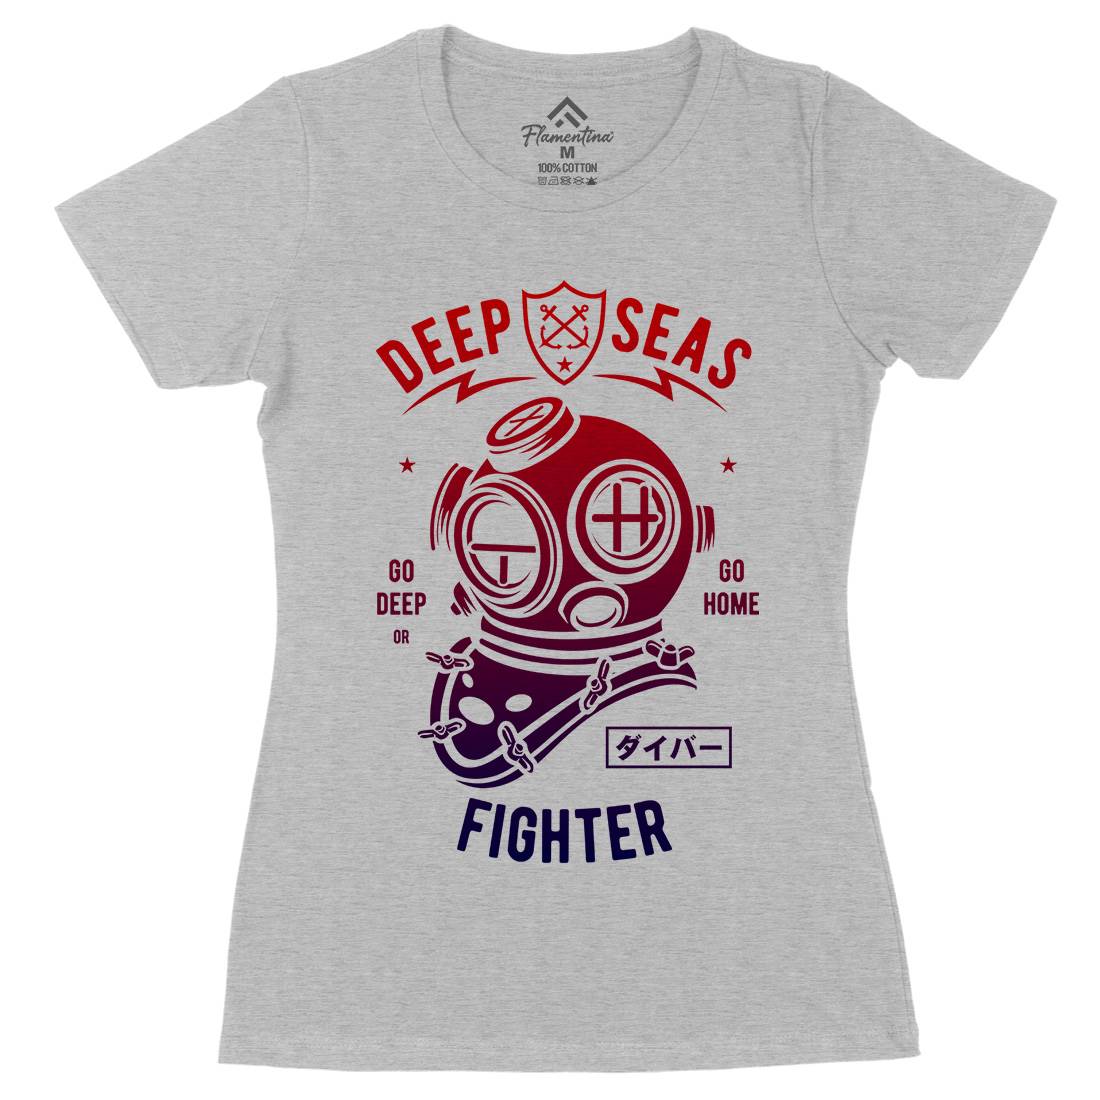 Deep Seas Fighter Womens Organic Crew Neck T-Shirt Navy A223